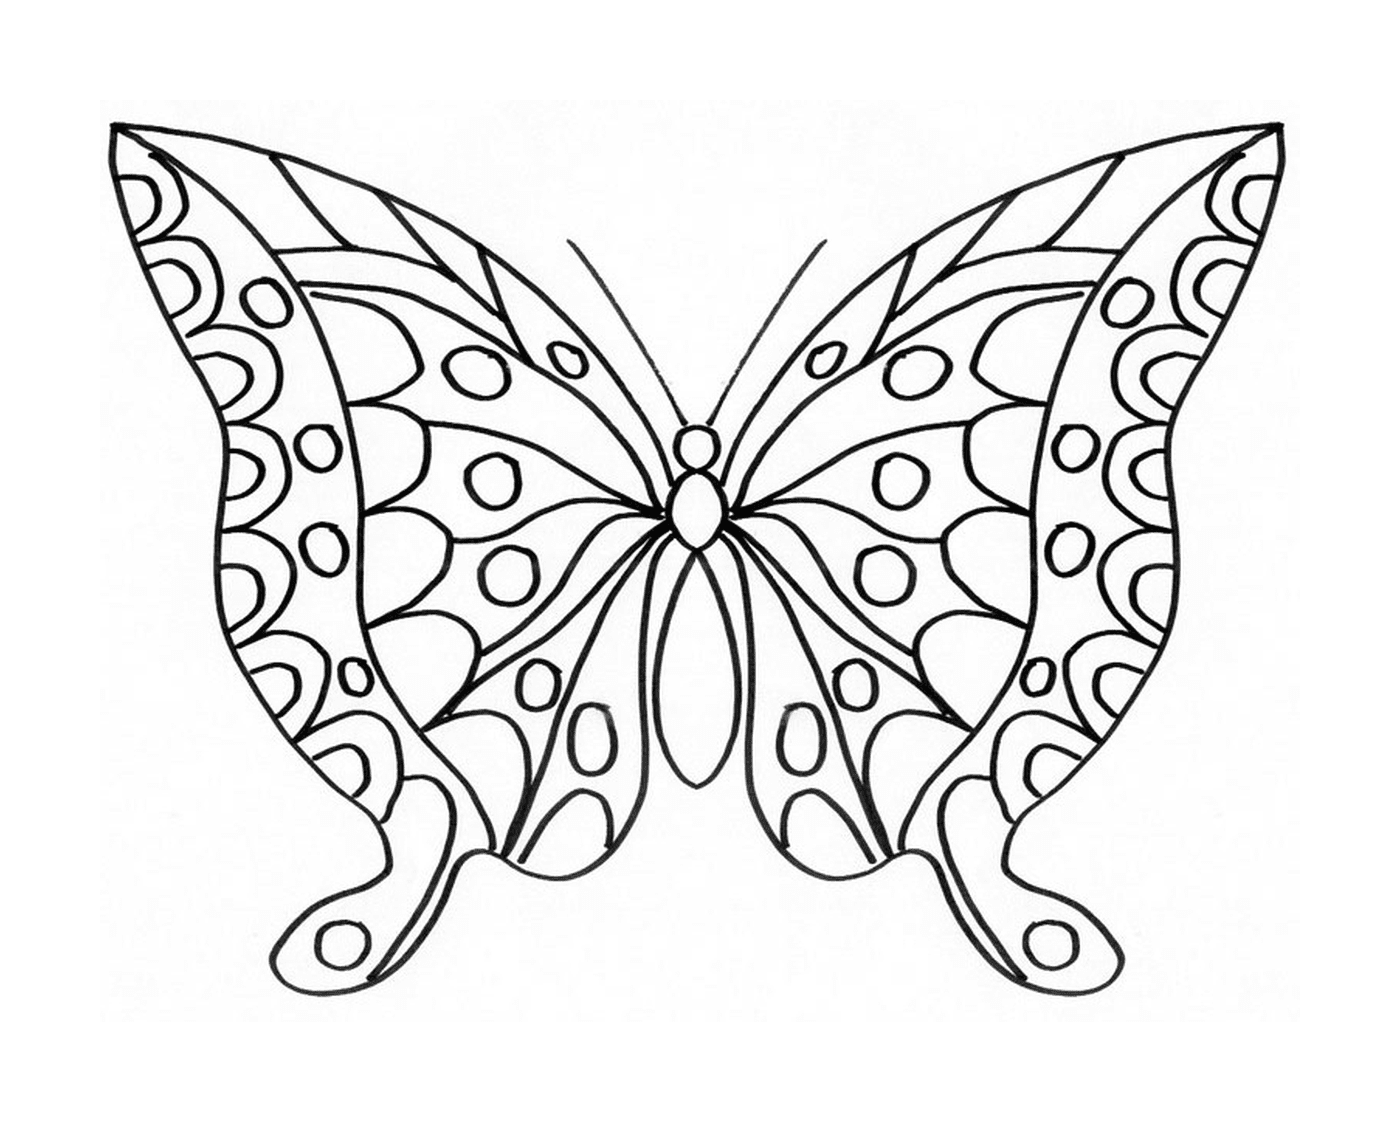  Mariposa delicada con alas brillantes 